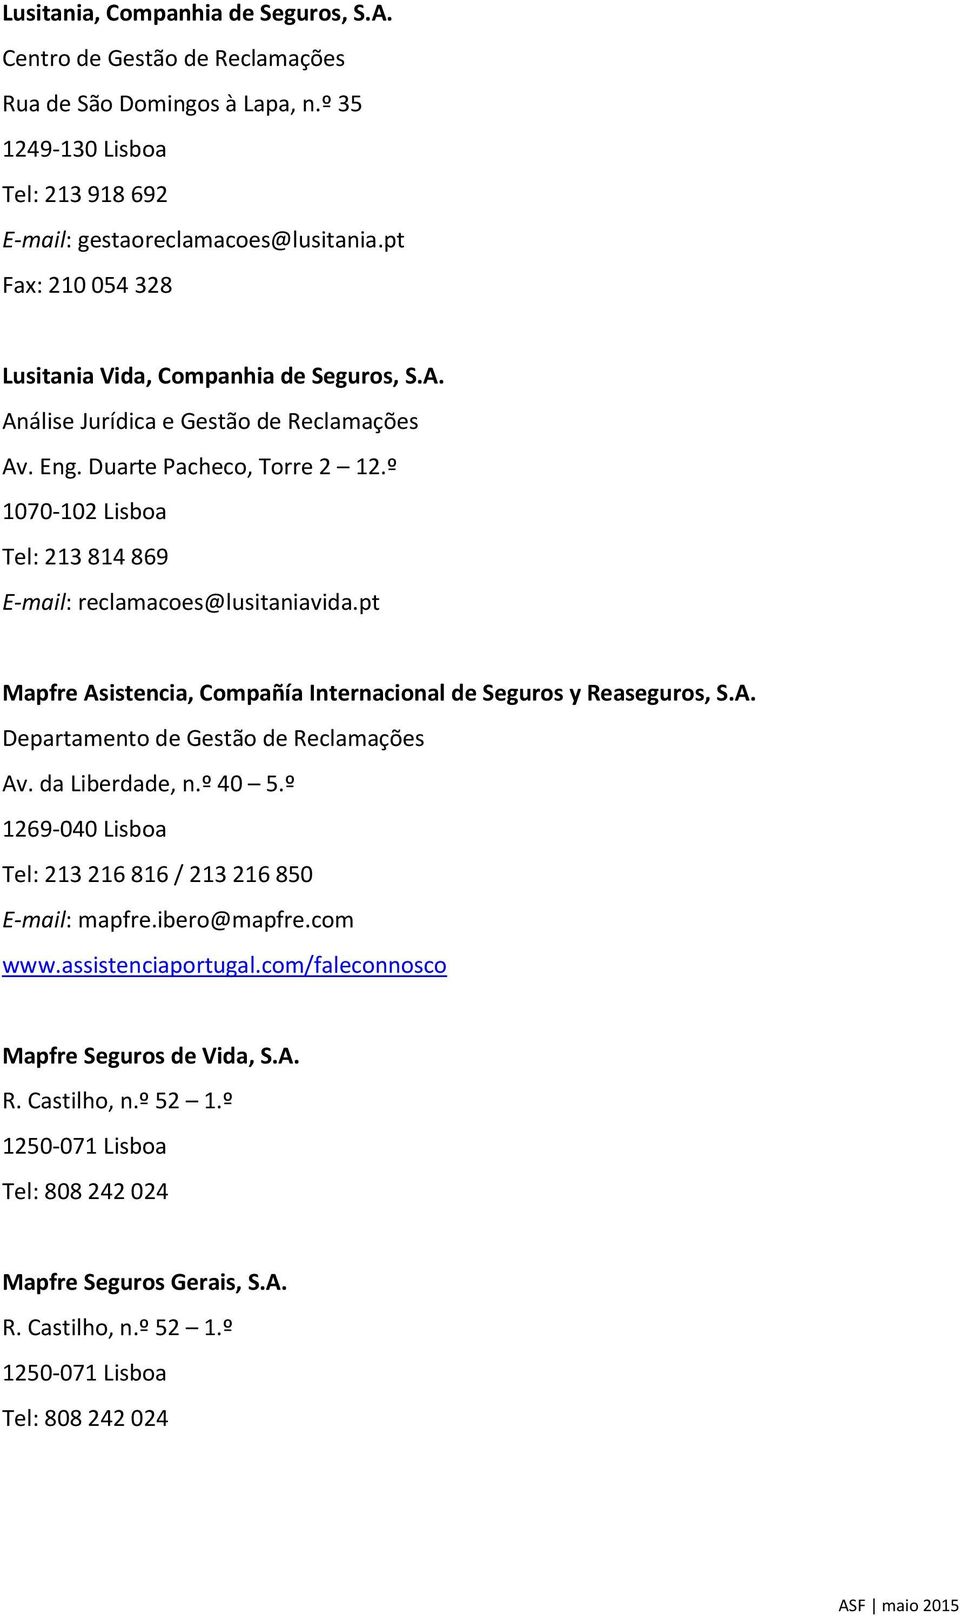 pt Mapfre Asistencia, Compañía Internacional de Seguros y Reaseguros, S.A. Departamento de Av. da Liberdade, n.º 40 5.º 1269-040 Lisboa Tel: 213 216 816 / 213 216 850 E-mail: mapfre.